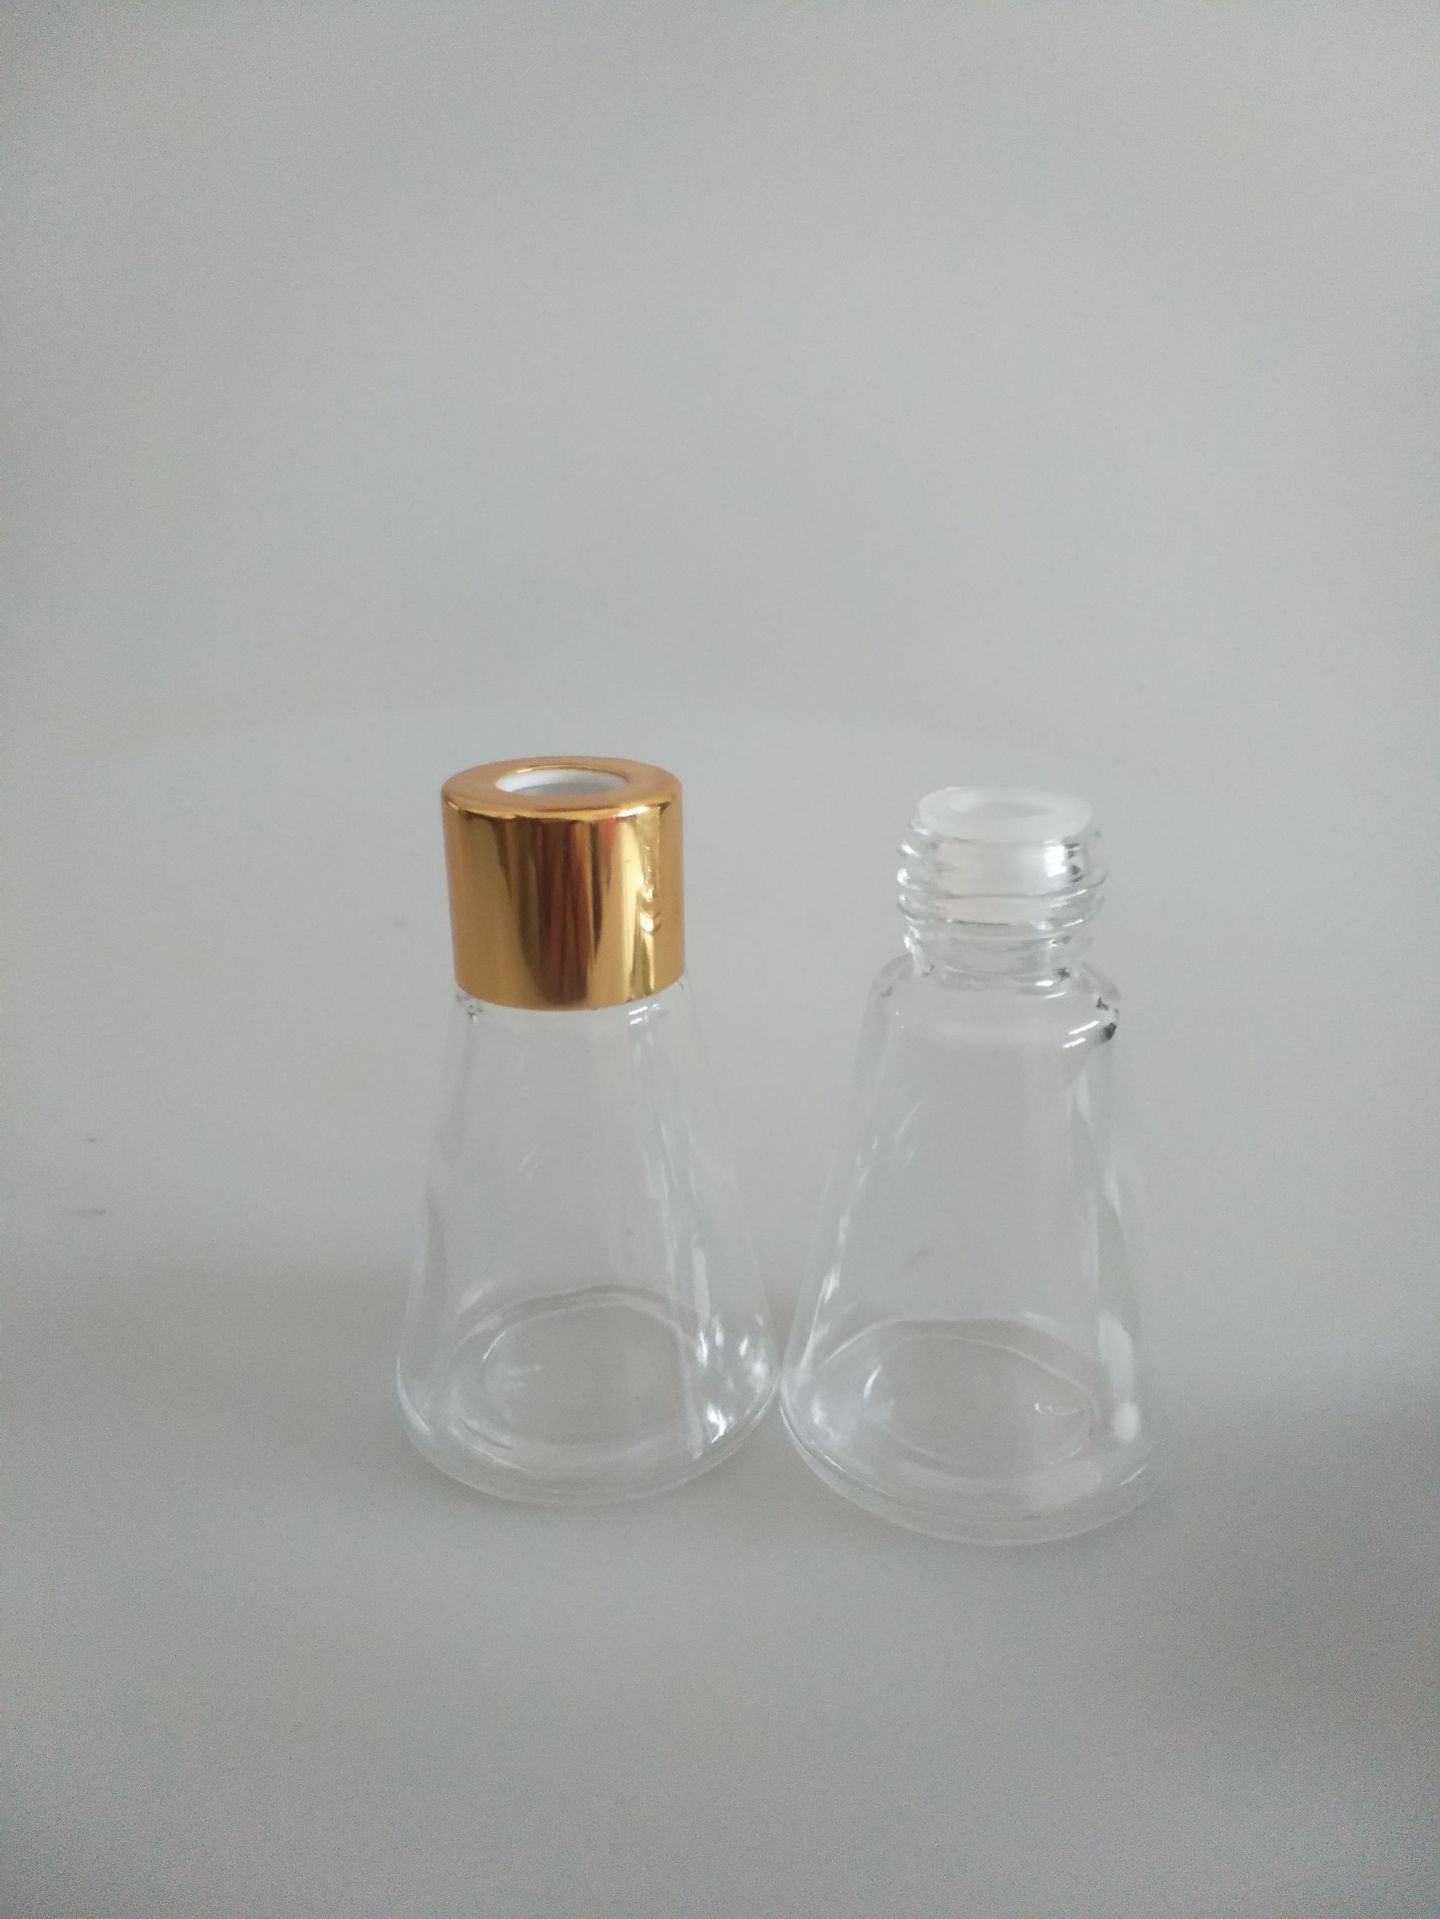 30毫升锥形玻璃香薰瓶锥形蒙砂玻璃香薰瓶晶白料玻璃香薰瓶